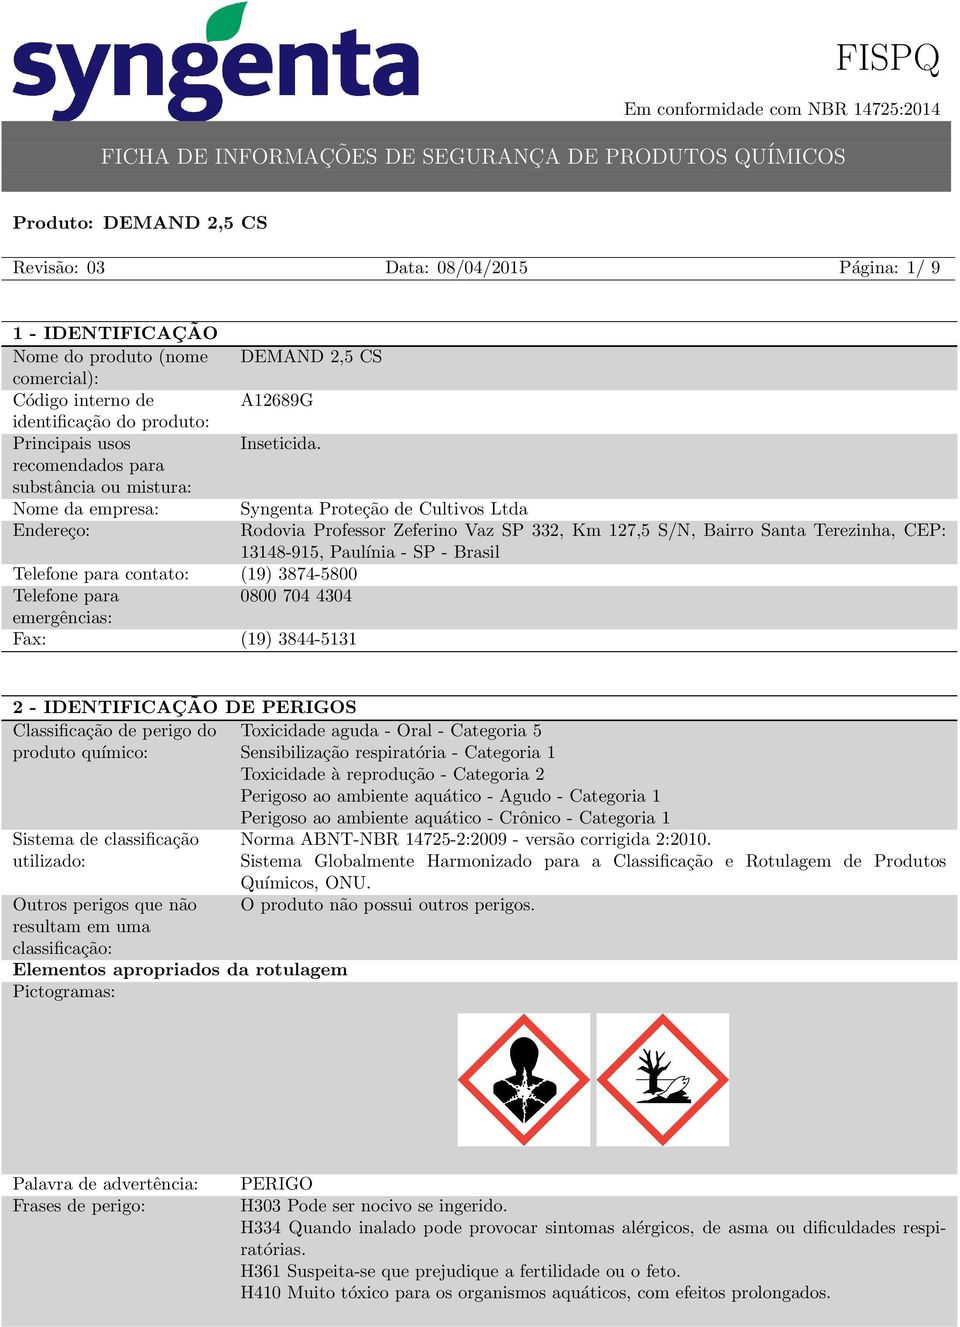 Paulínia - SP - Brasil Telefone para contato: (19) 3874-5800 Telefone para 0800 704 4304 emergências: Fax: (19) 3844-5131 2 - IDENTIFICAÇÃO DE PERIGOS Classificação de perigo do Toxicidade aguda -